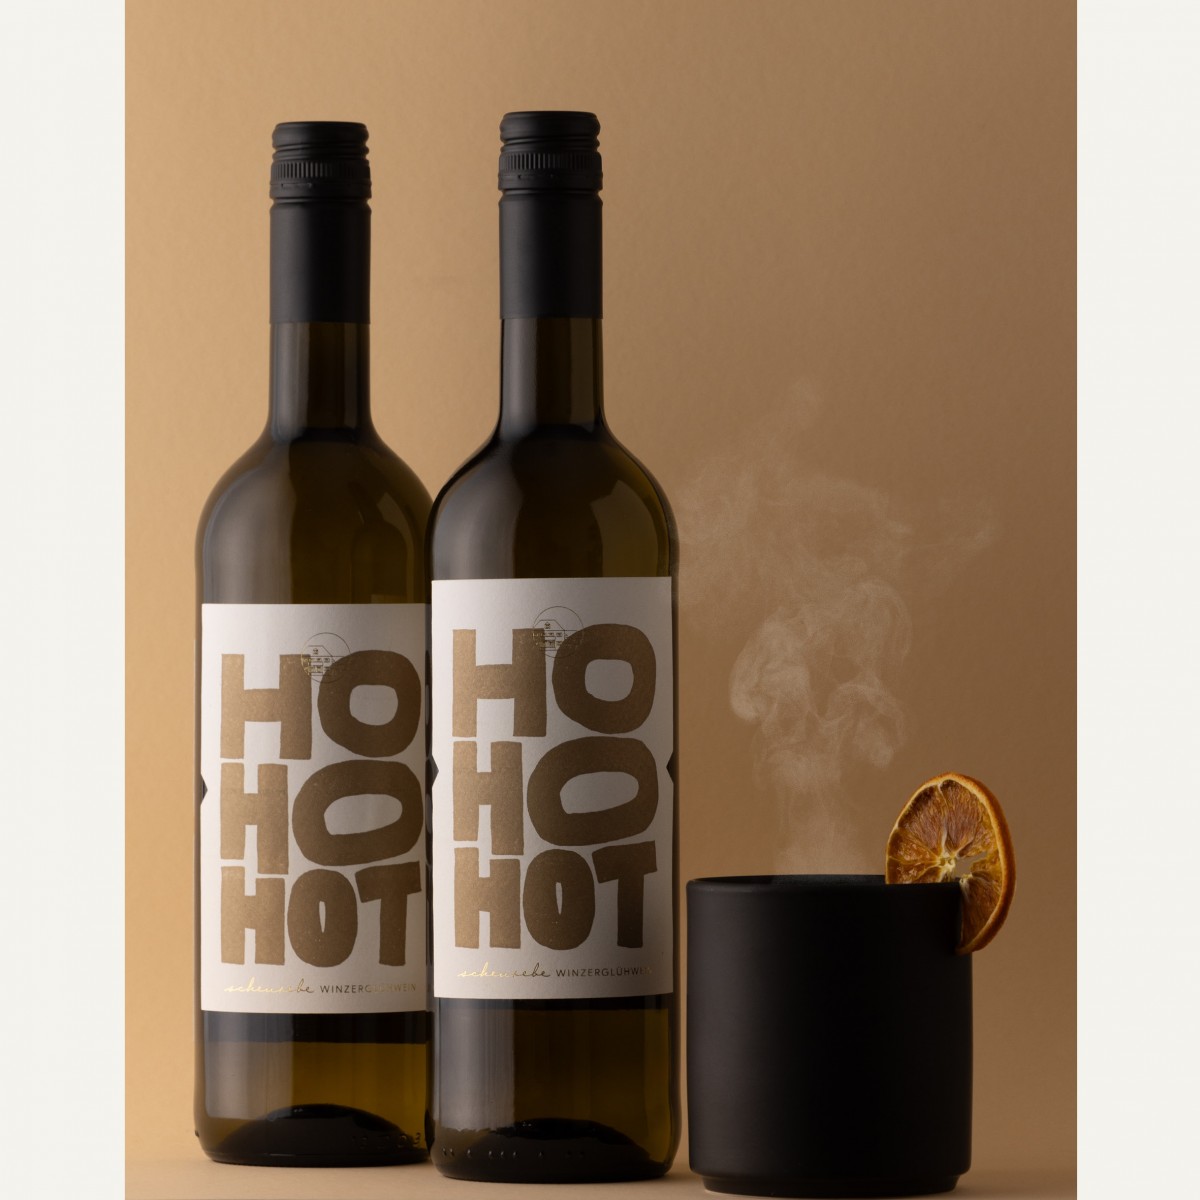 HO HO HOT - weißer Winzerglühwein vom Weingut Krughof - 6er-/12er Paket